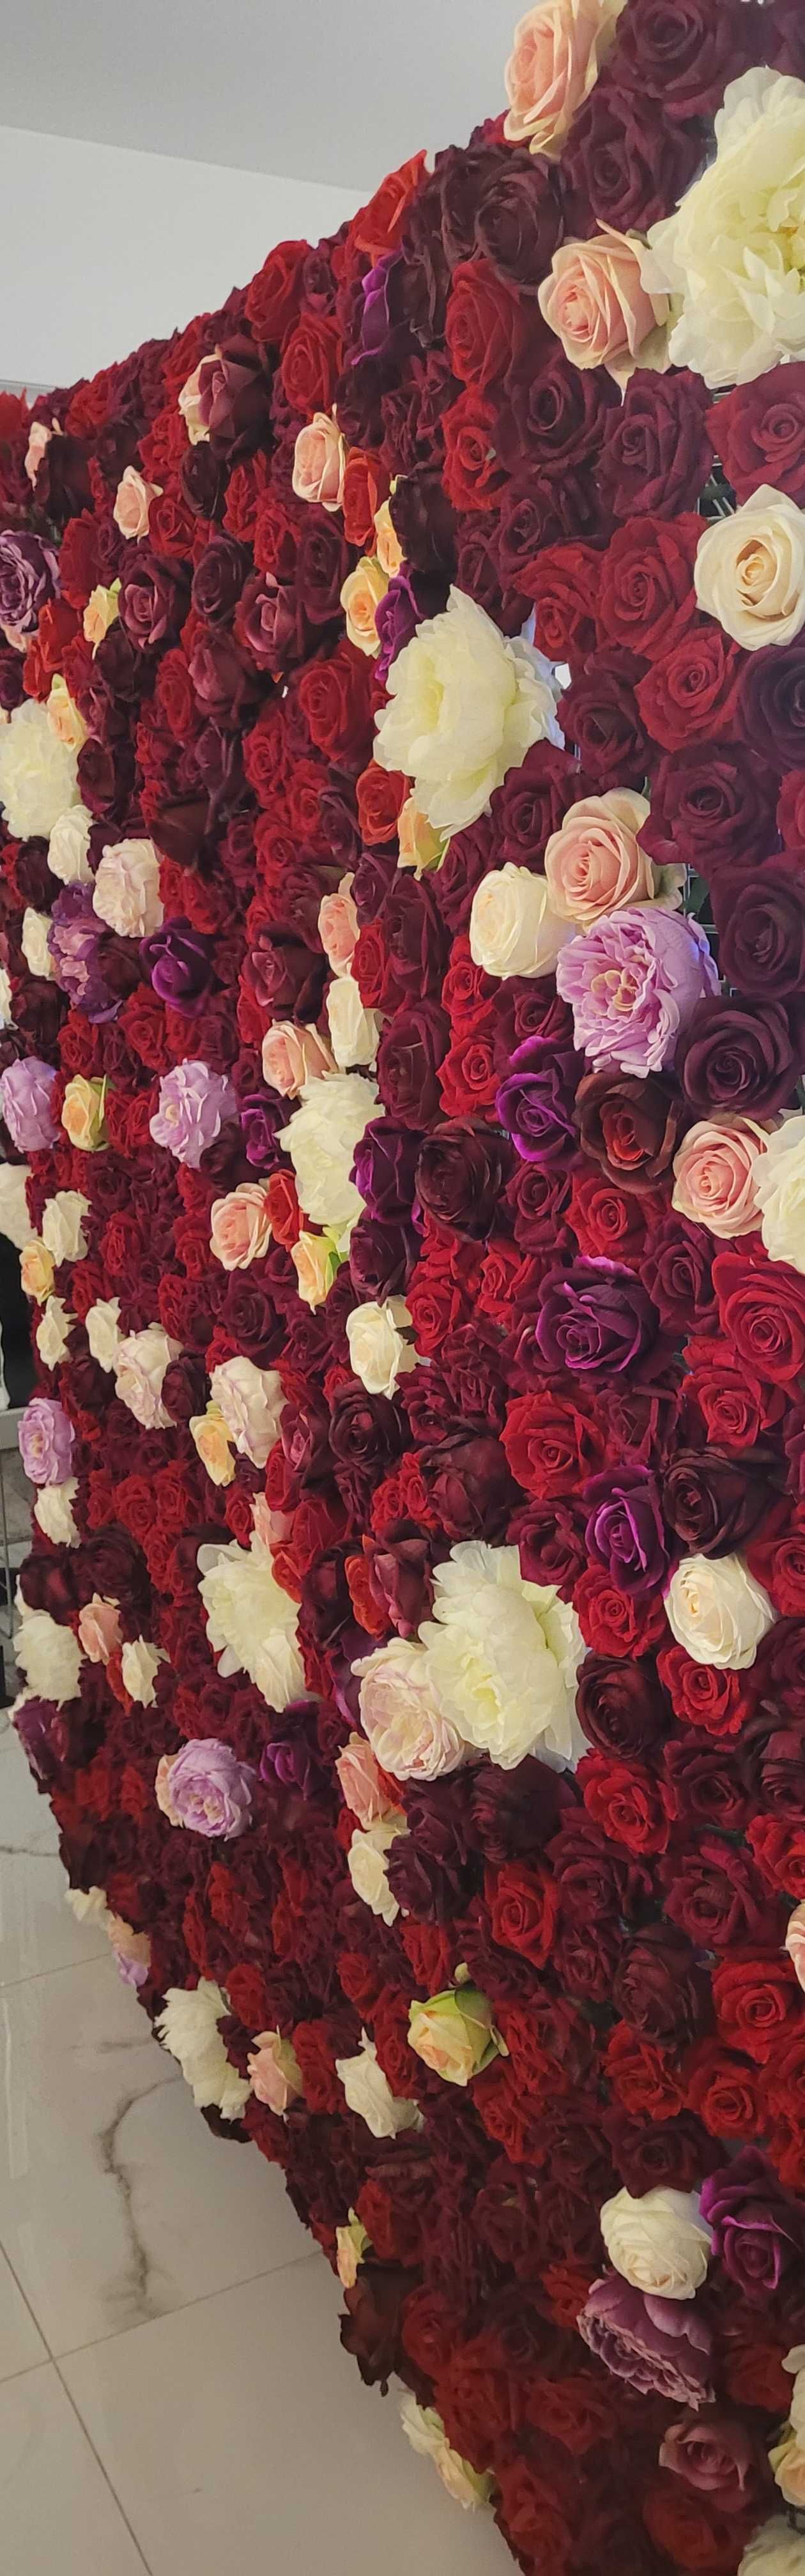 Ścianka kwiatowa różana American Dream róże urodziny ślub restauracja